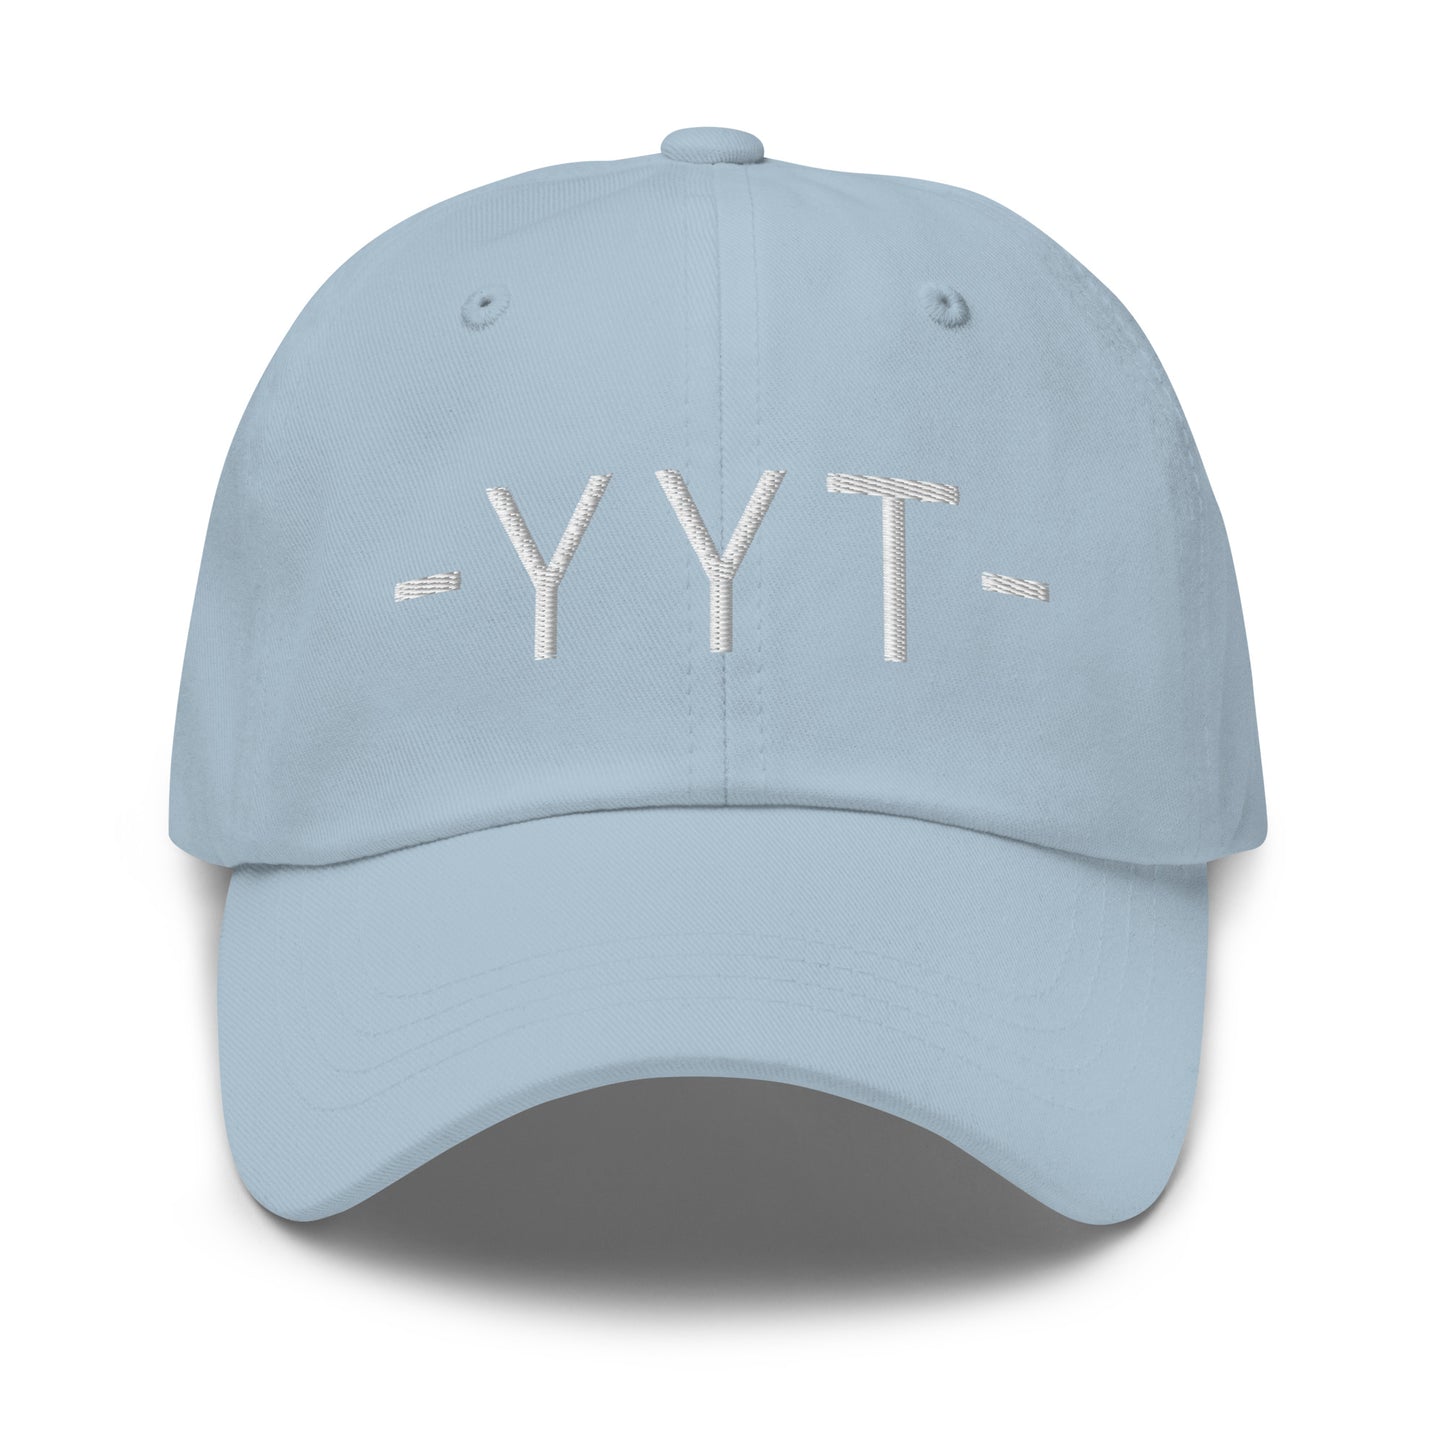 Souvenir Baseball Cap - White • YYT St. John's • YHM Designs - Image 27